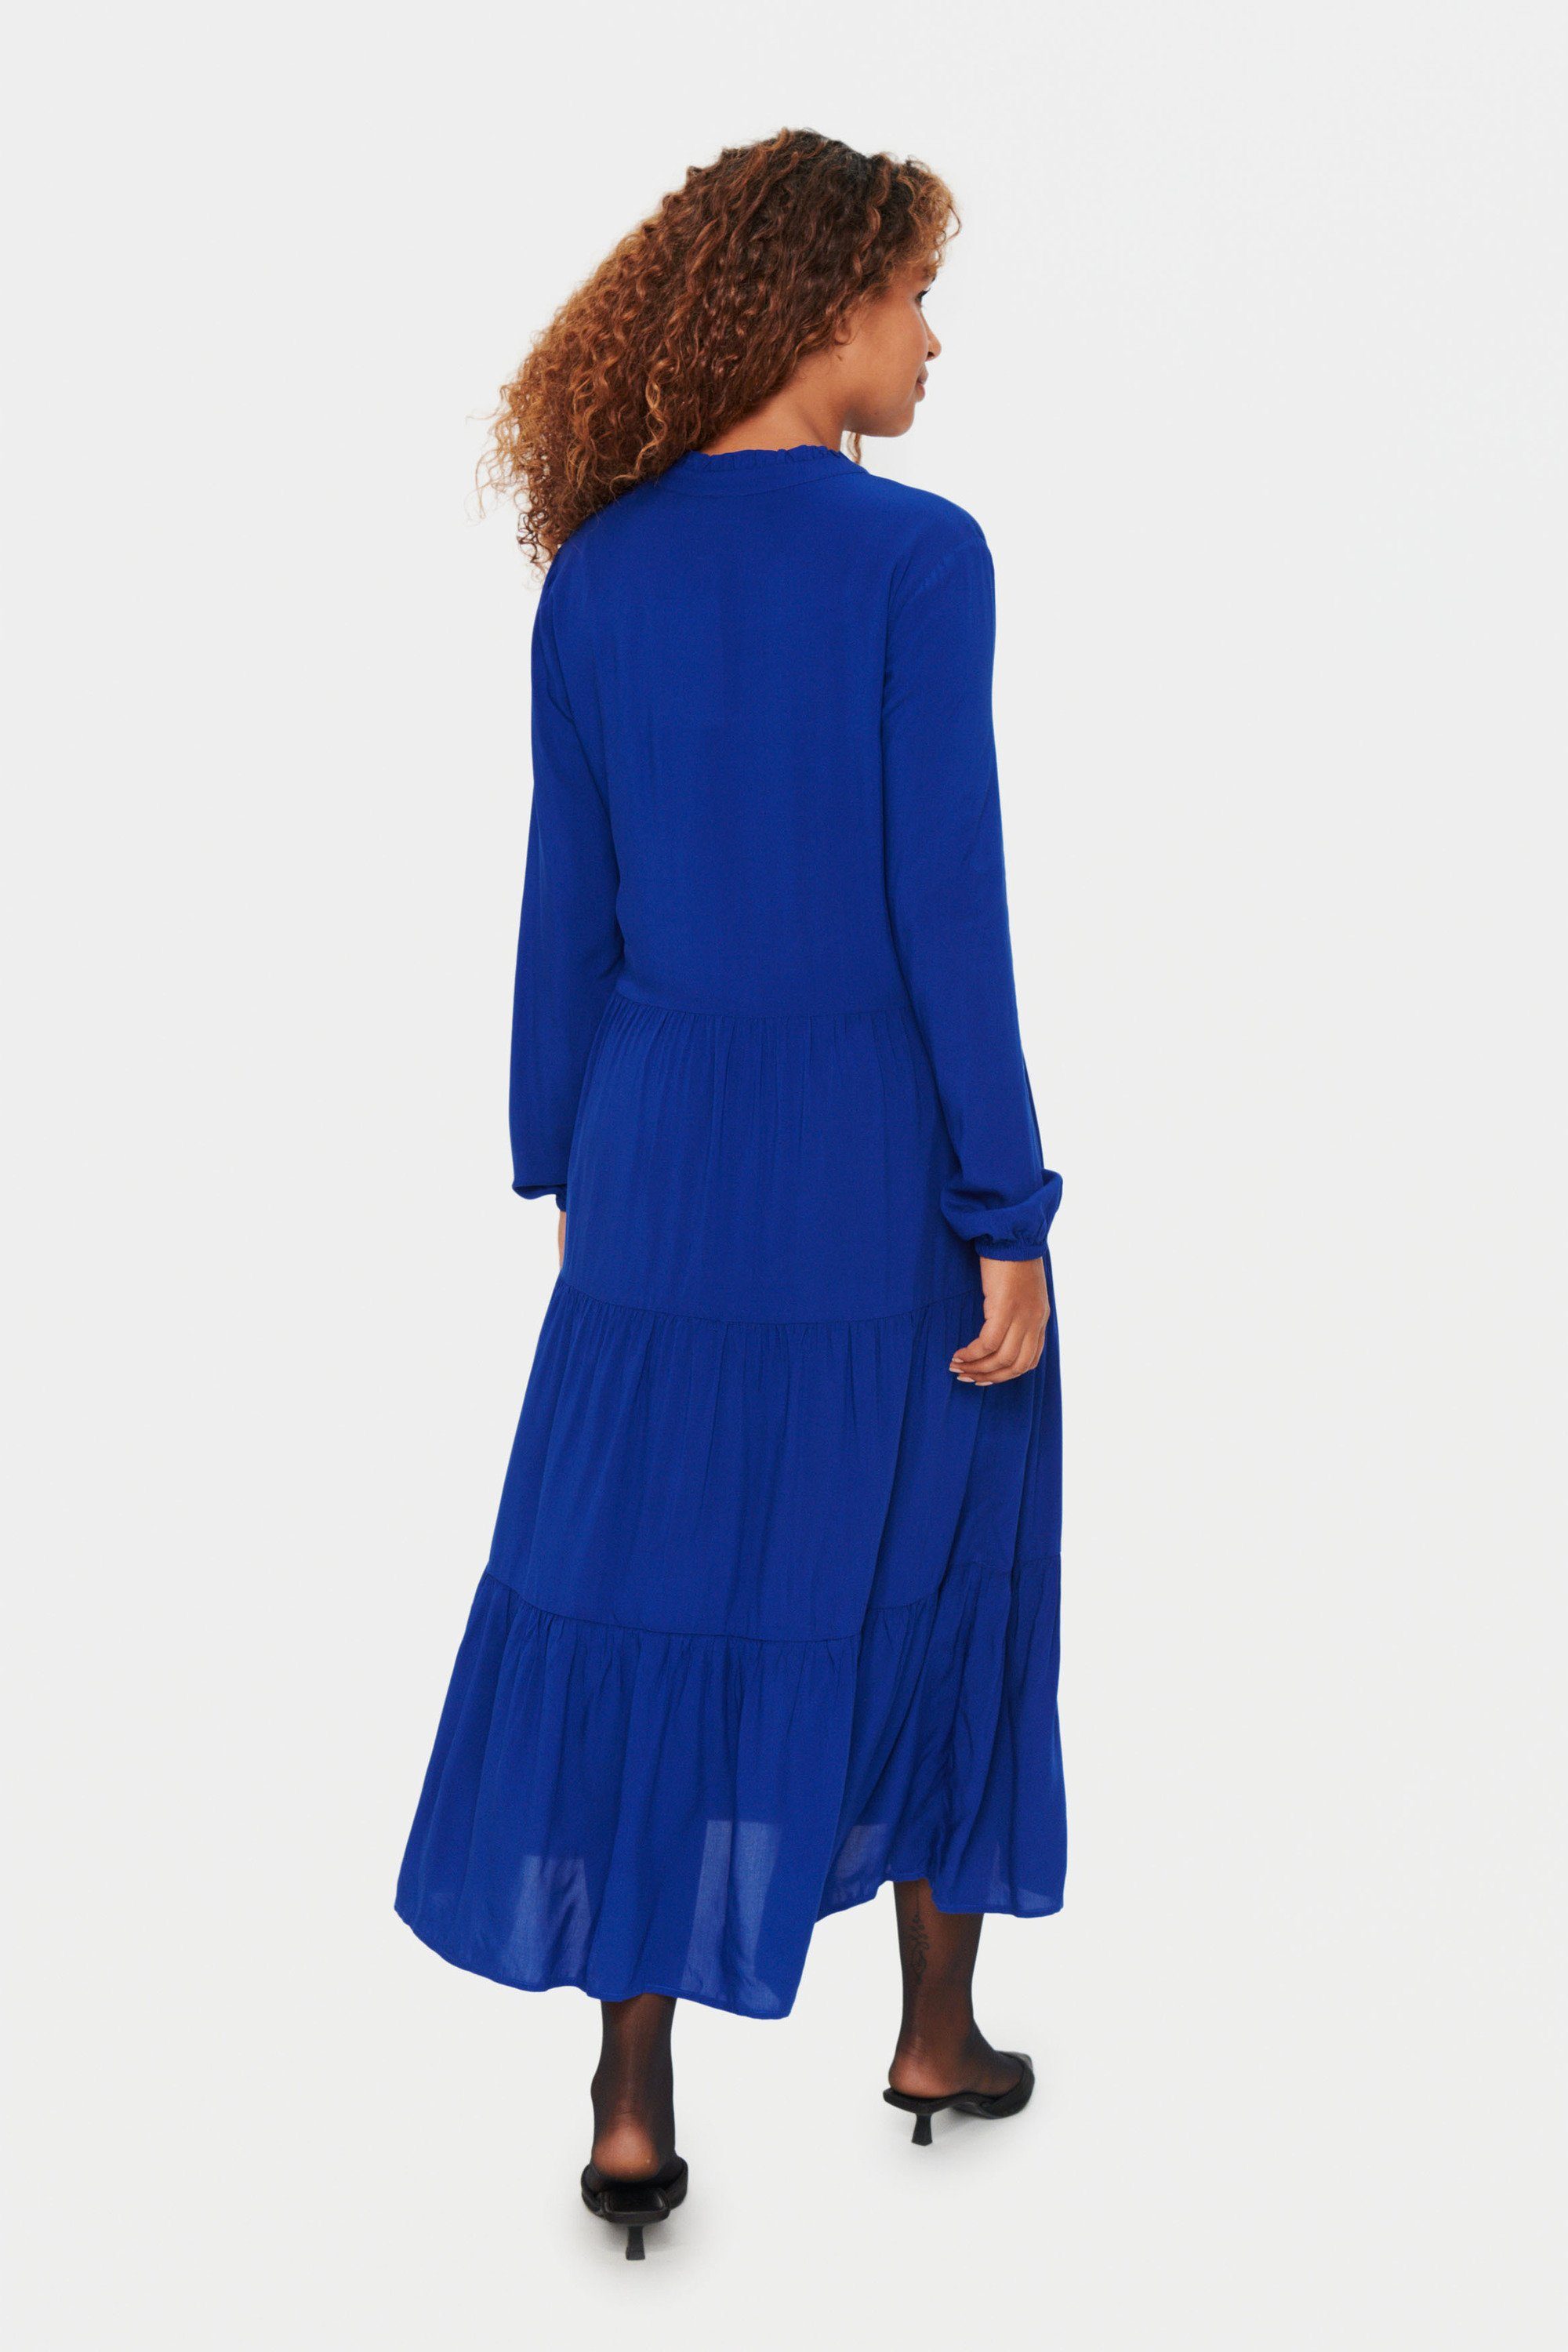 Sodalite EdaSZ Blue Saint Jerseykleid Kleid Tropez